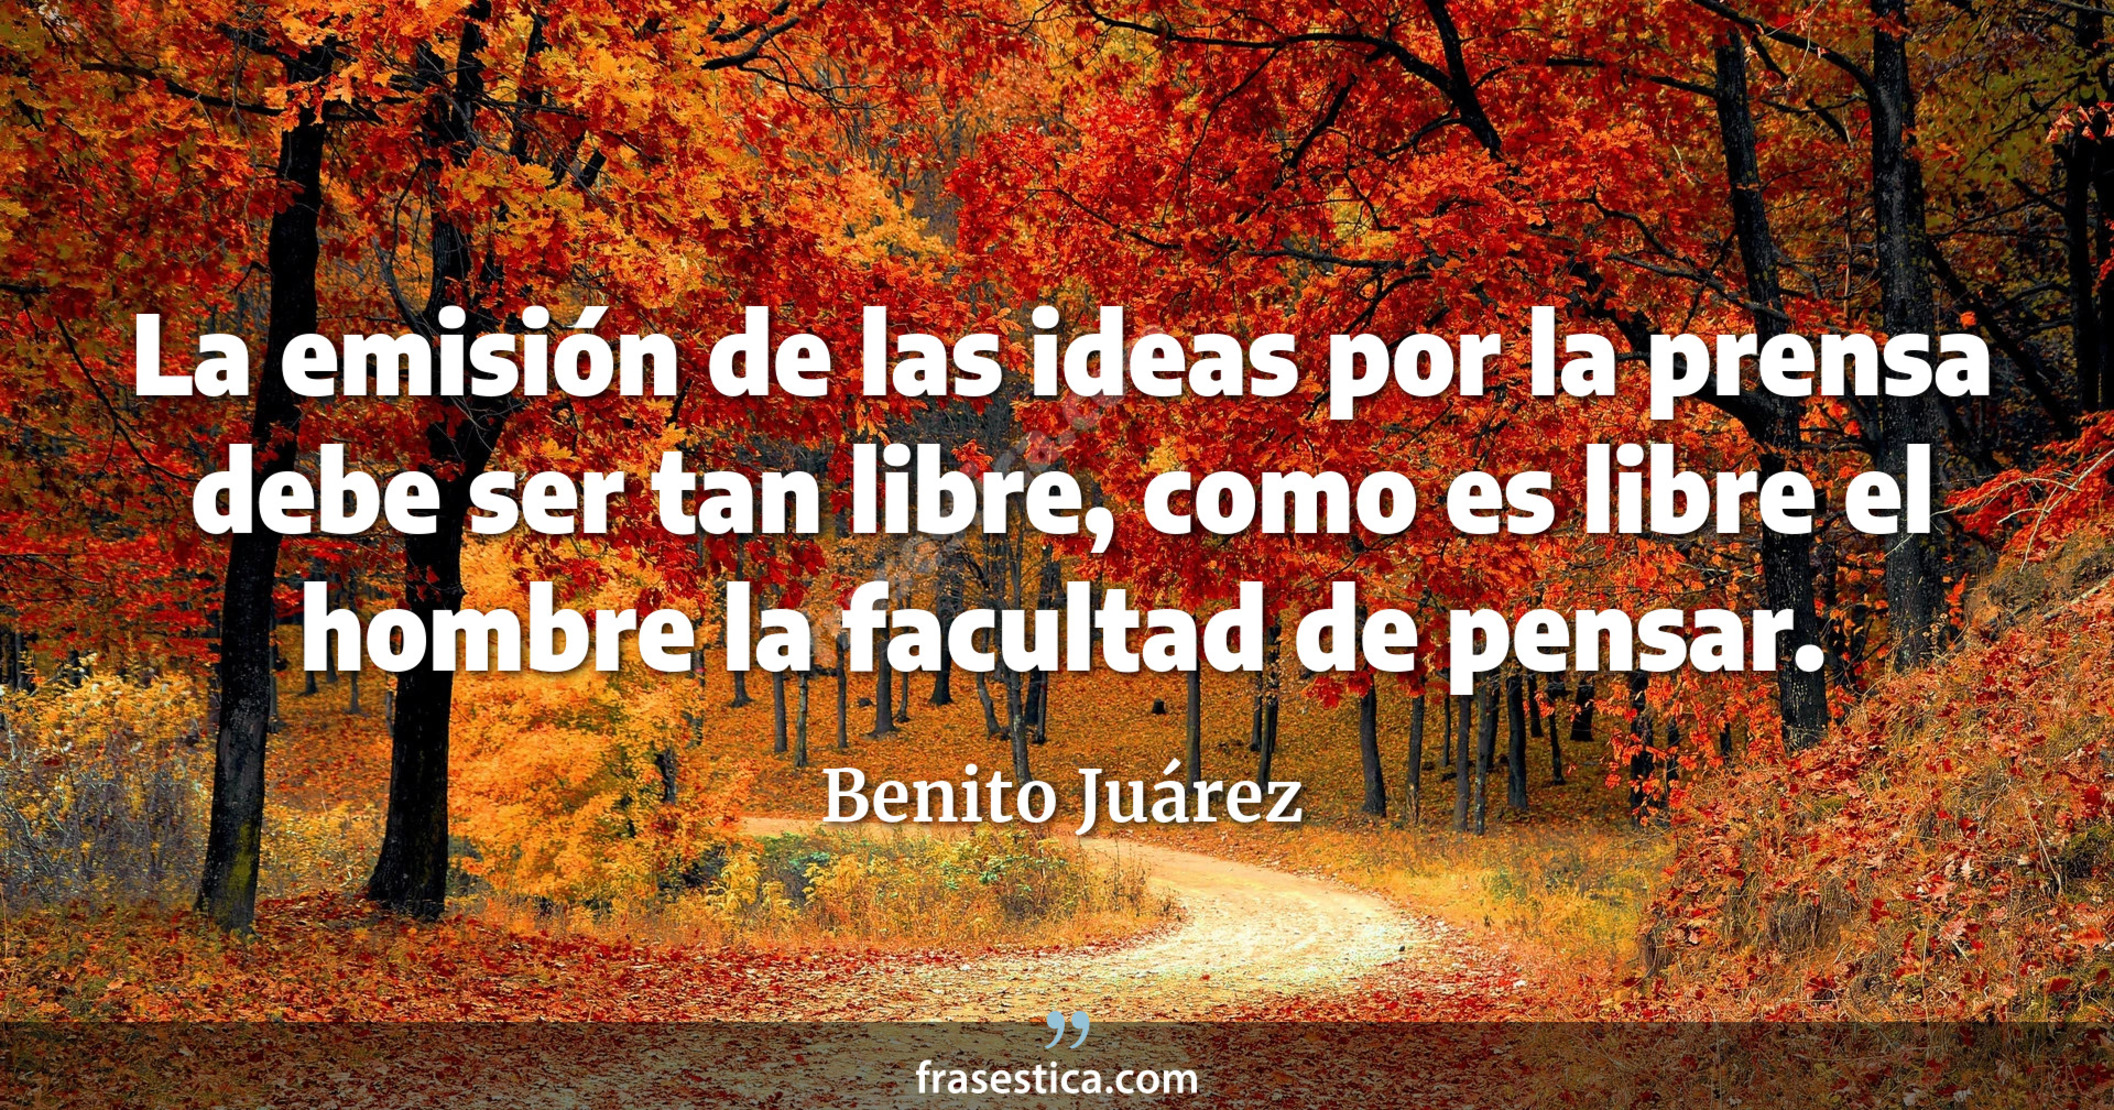 La emisión de las ideas por la prensa debe ser tan libre, como es libre el hombre la facultad de pensar. - Benito Juárez